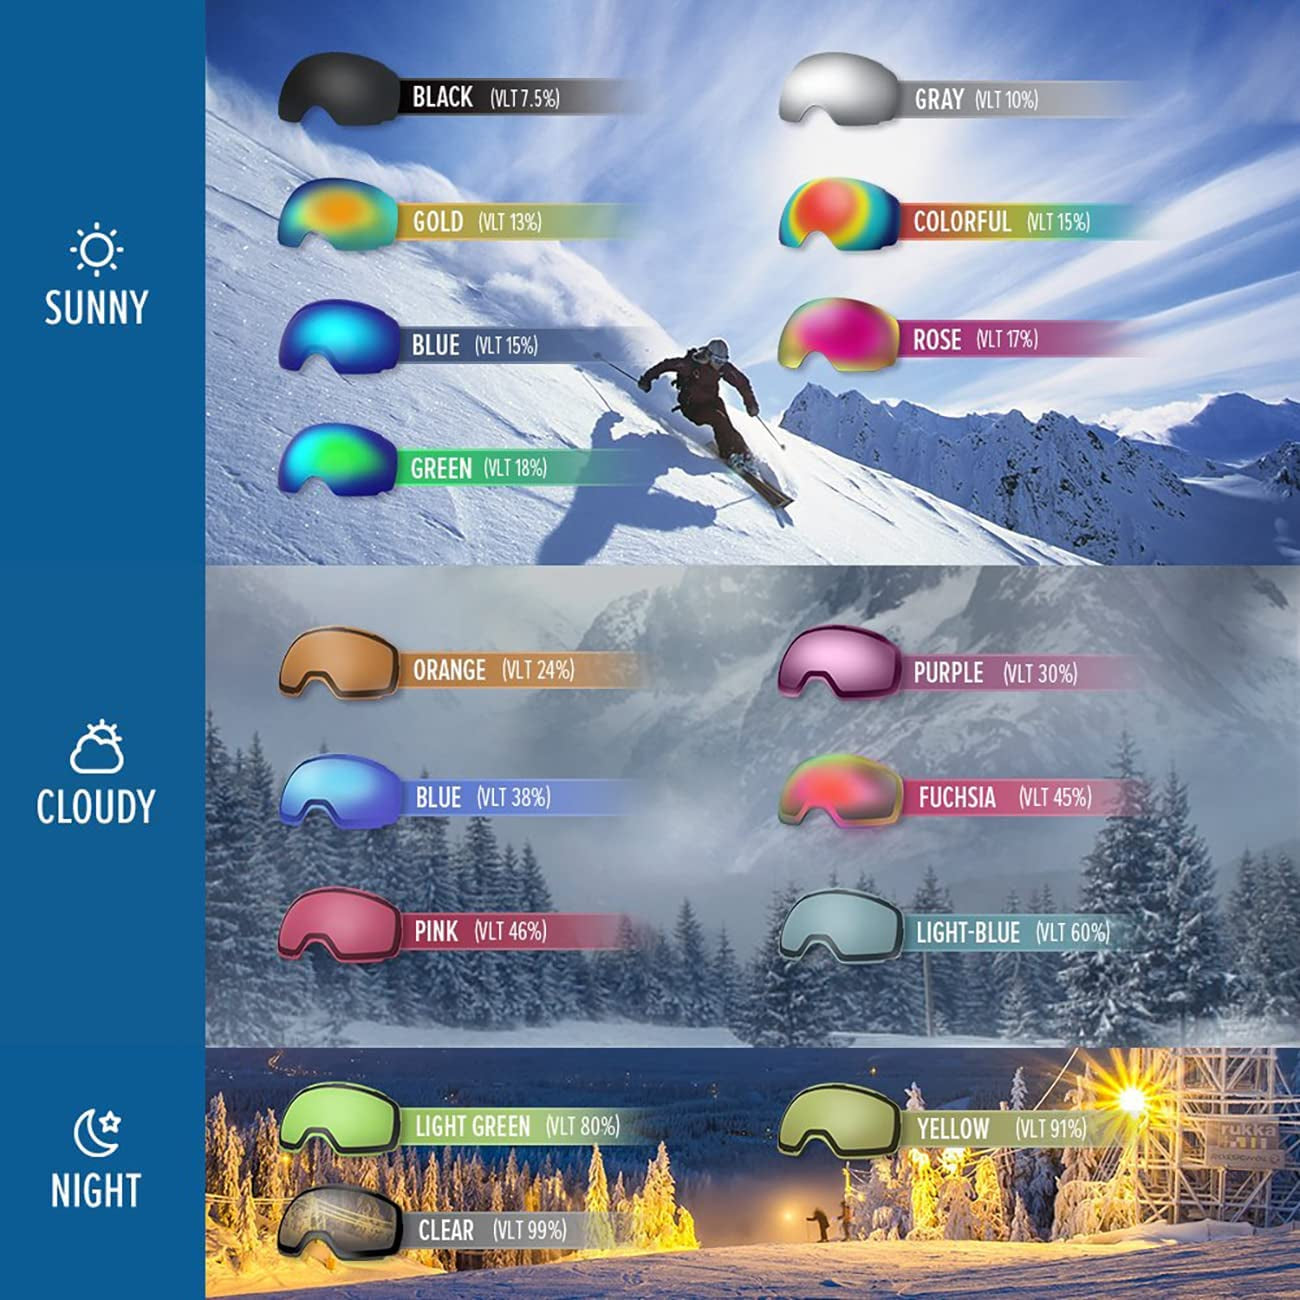 OTG Ski Goggles - over Glasses Ski/Snowboard Goggles for Men, Women & Youth - 100% UV Protection